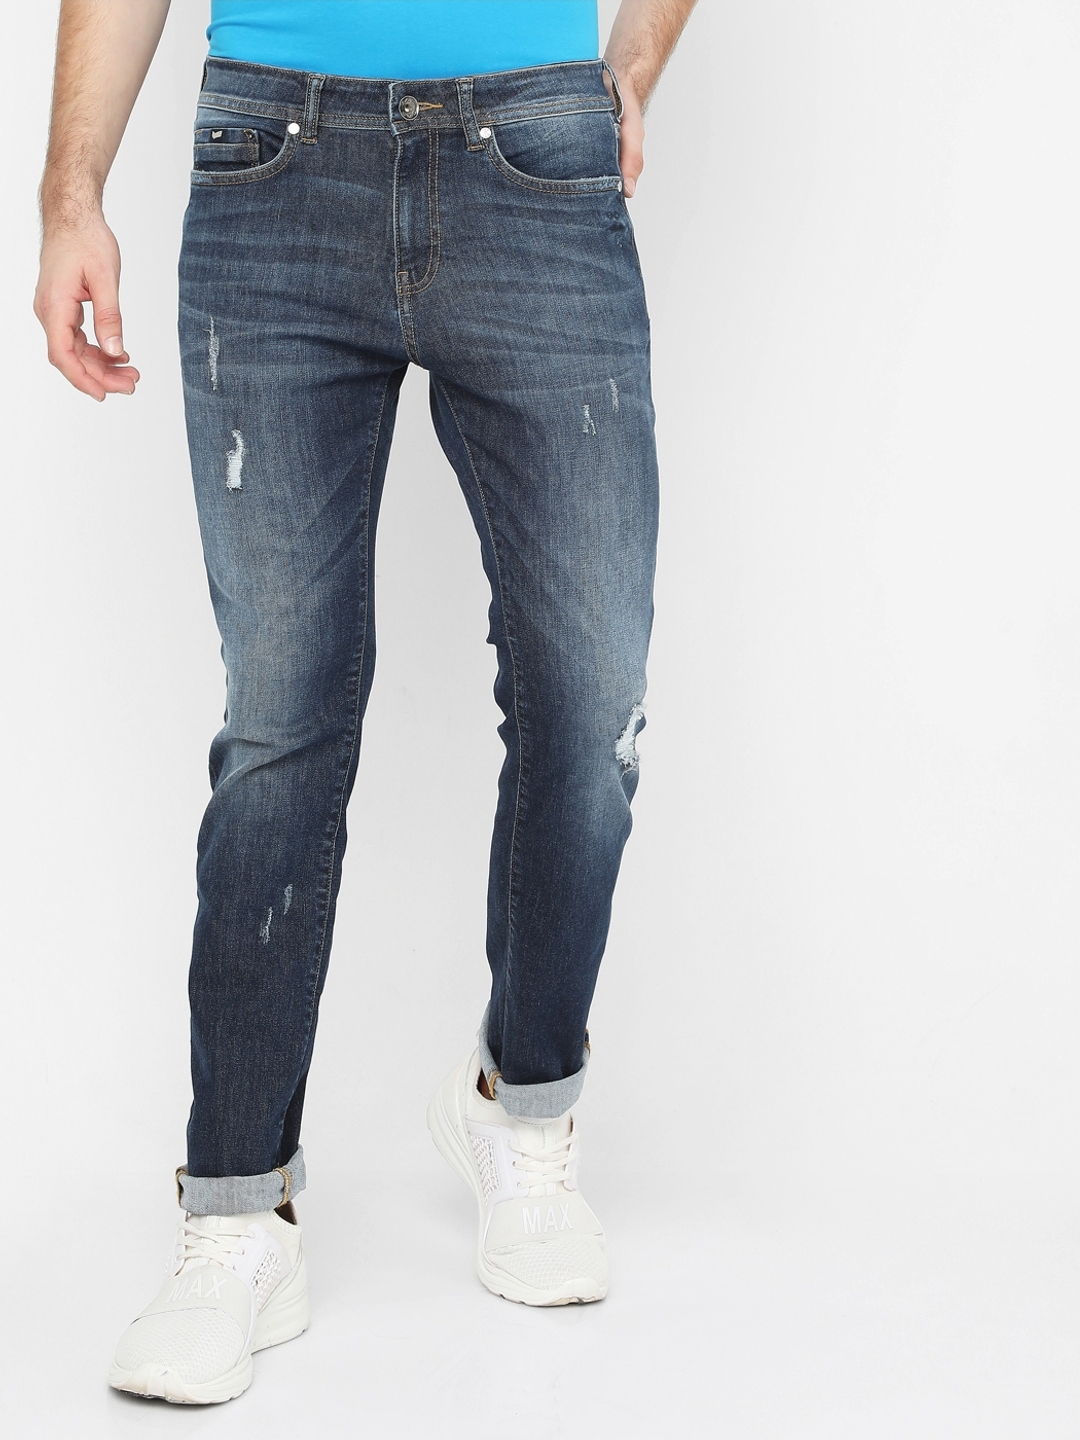 Mens Jeans - Buy Jeans for Men Online at Best Prices | Westside